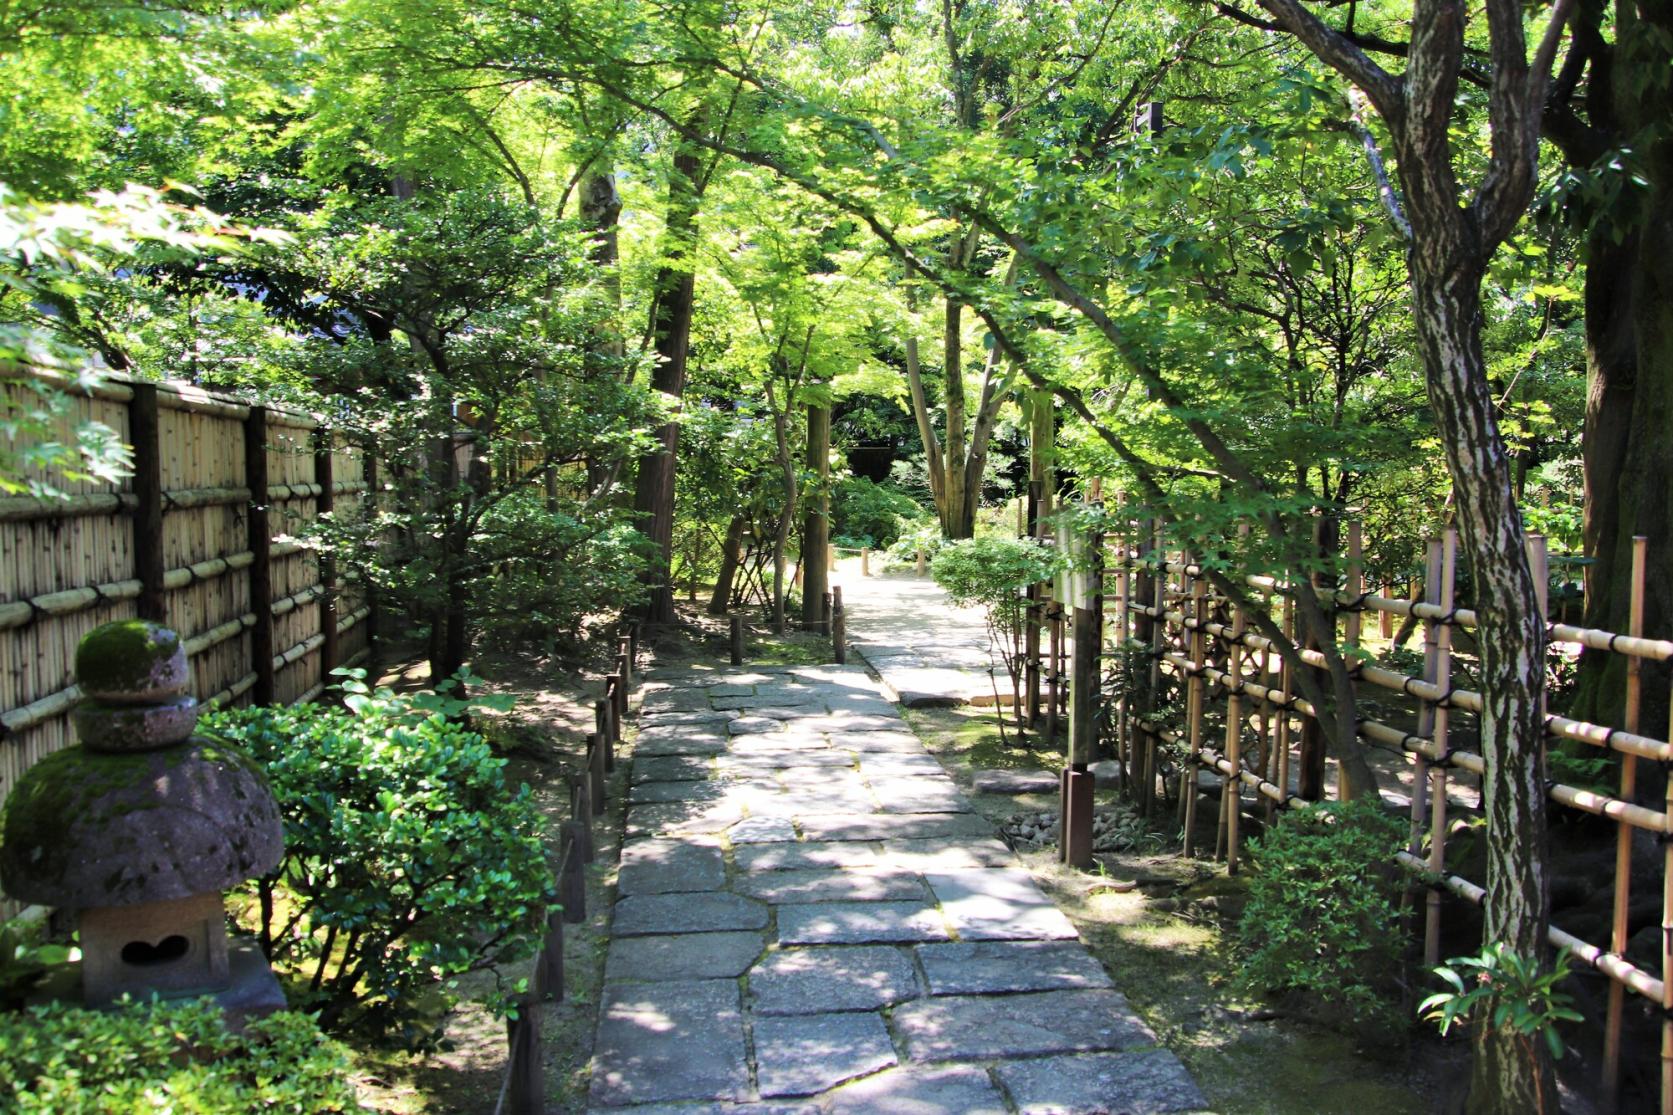 Rakusuien Garden (Strolling-Style, Fukuoka City)-1